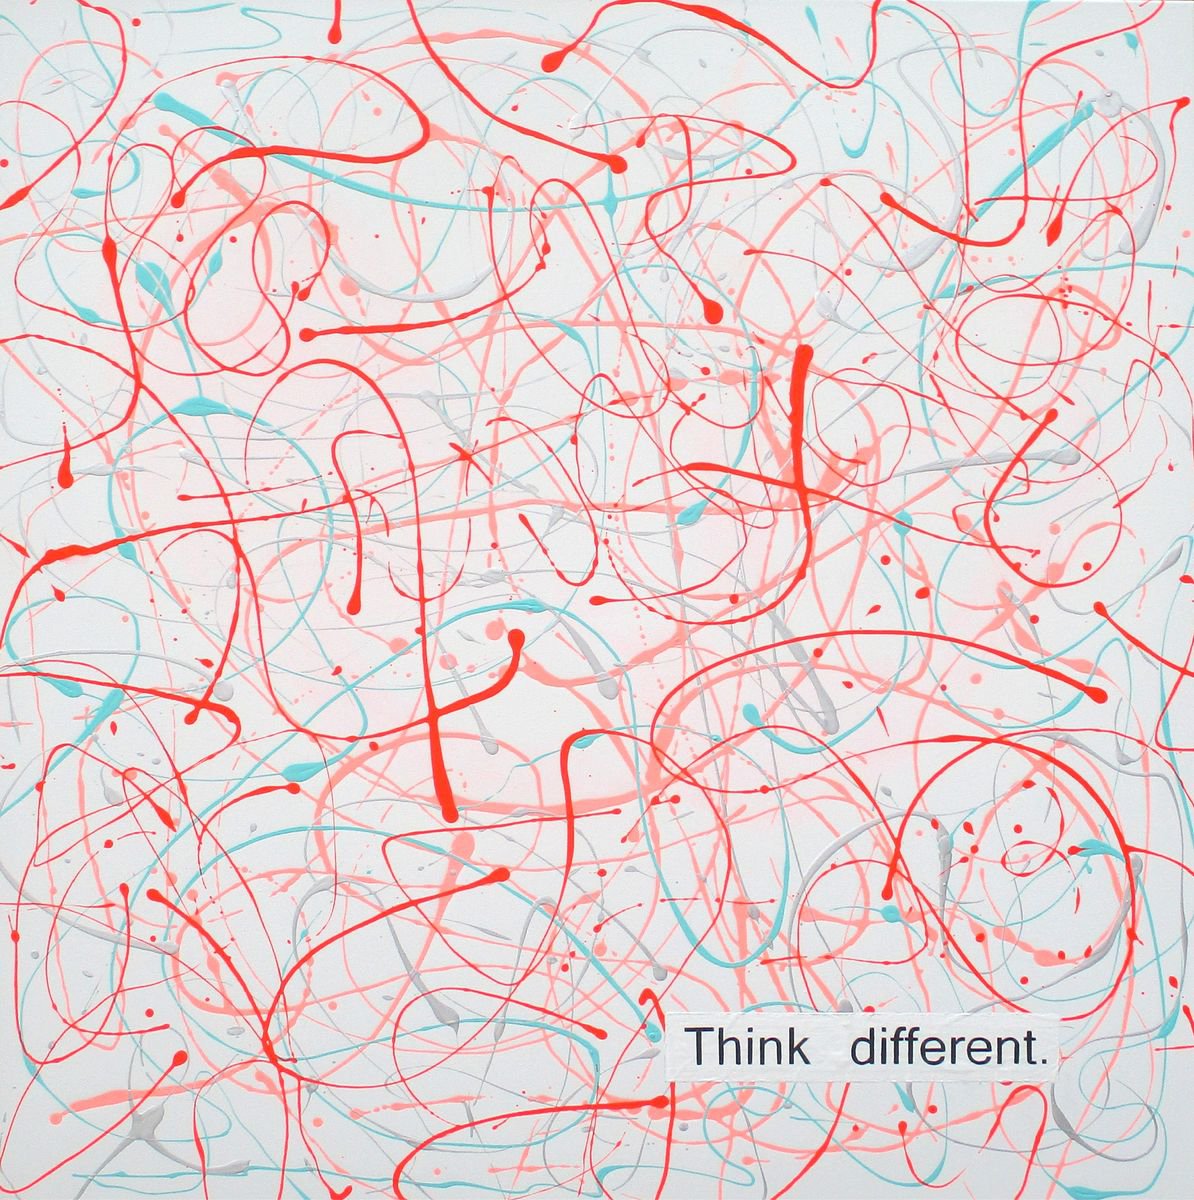 Think different by SUPER POP BOY - Pop Art